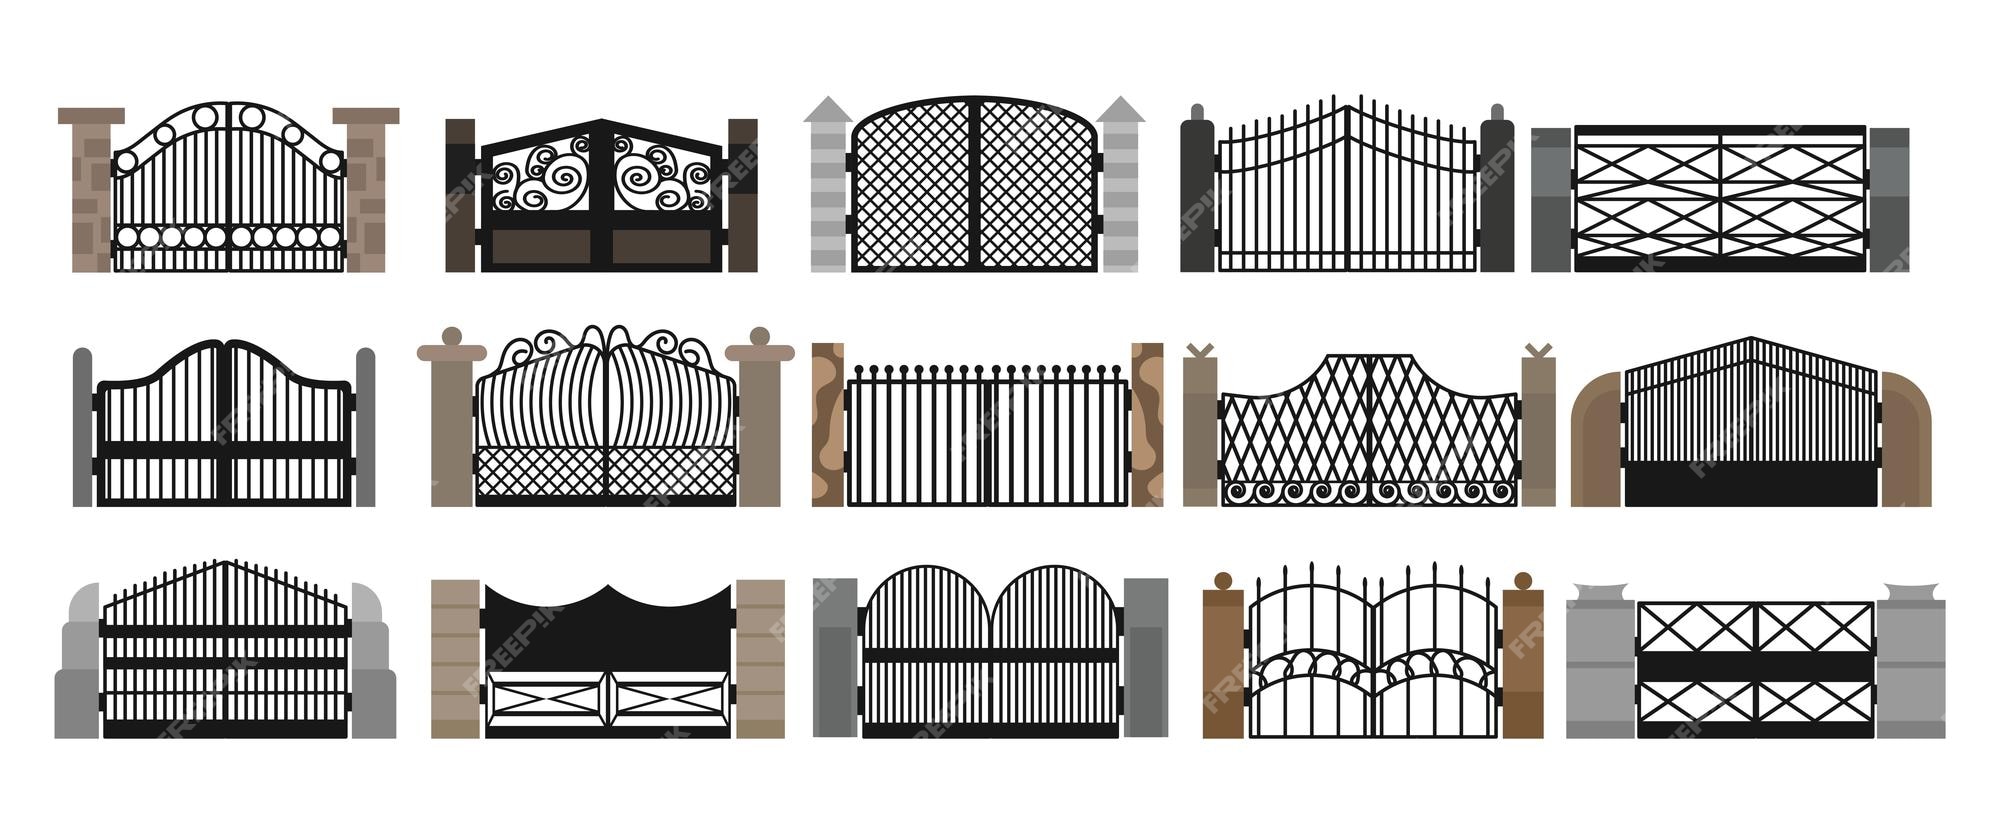 Premium Vector | Gate with iron fence door and metal cartoon manor ...